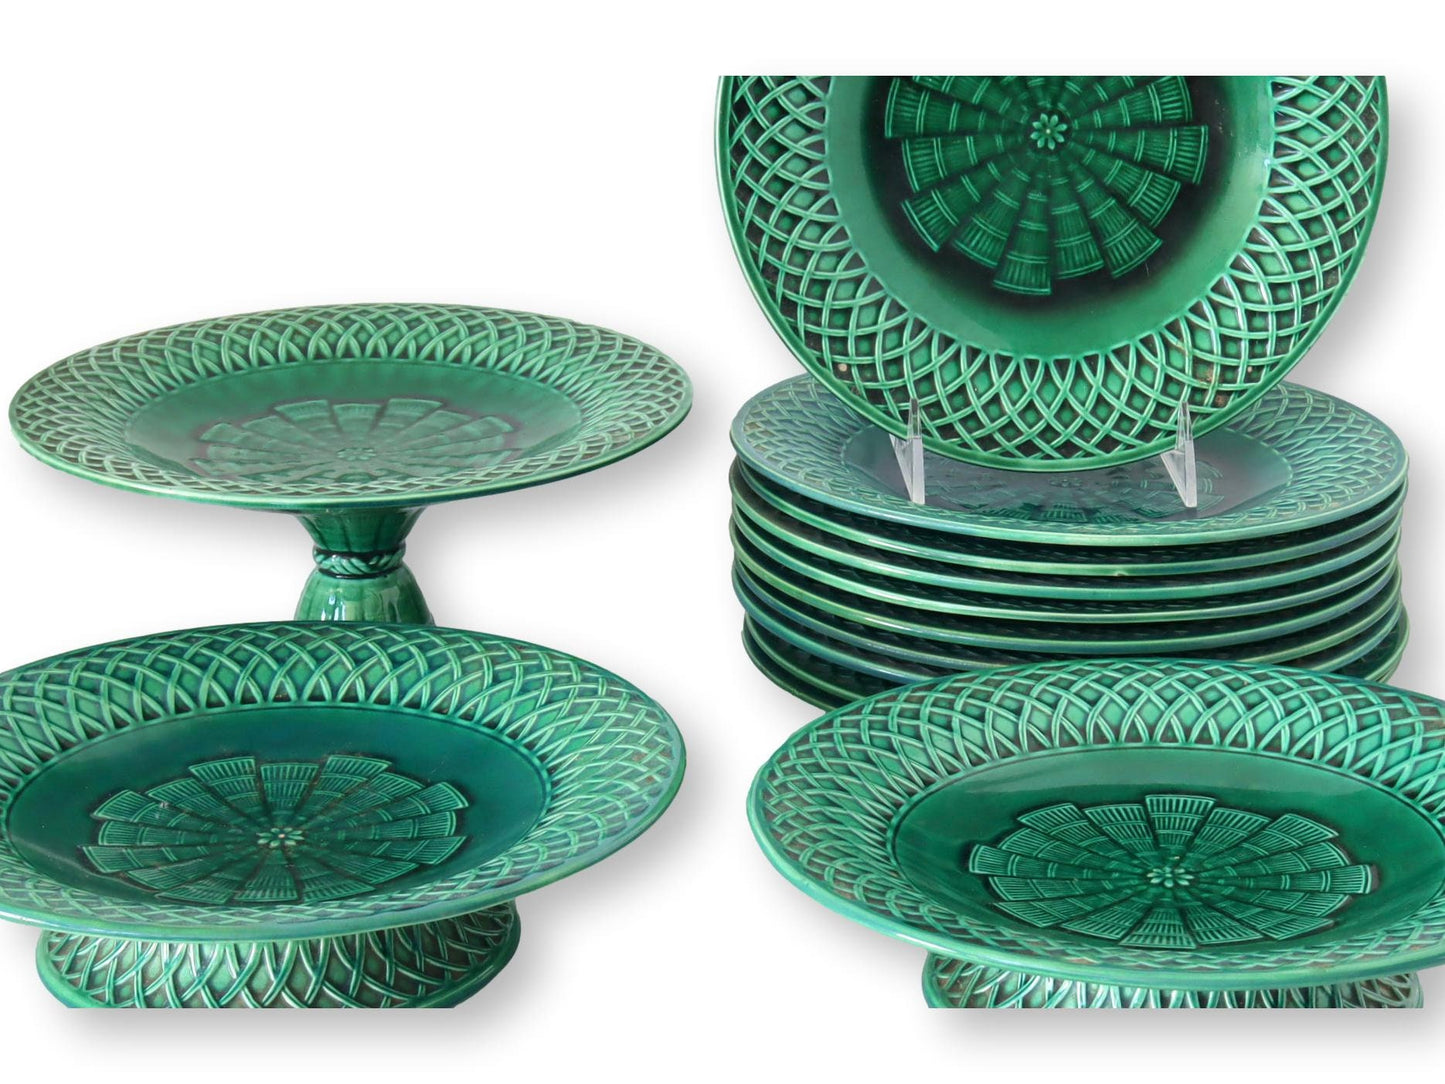 1860s Mintons Green Majolica Christopher Dresser Dessert Set, S/13